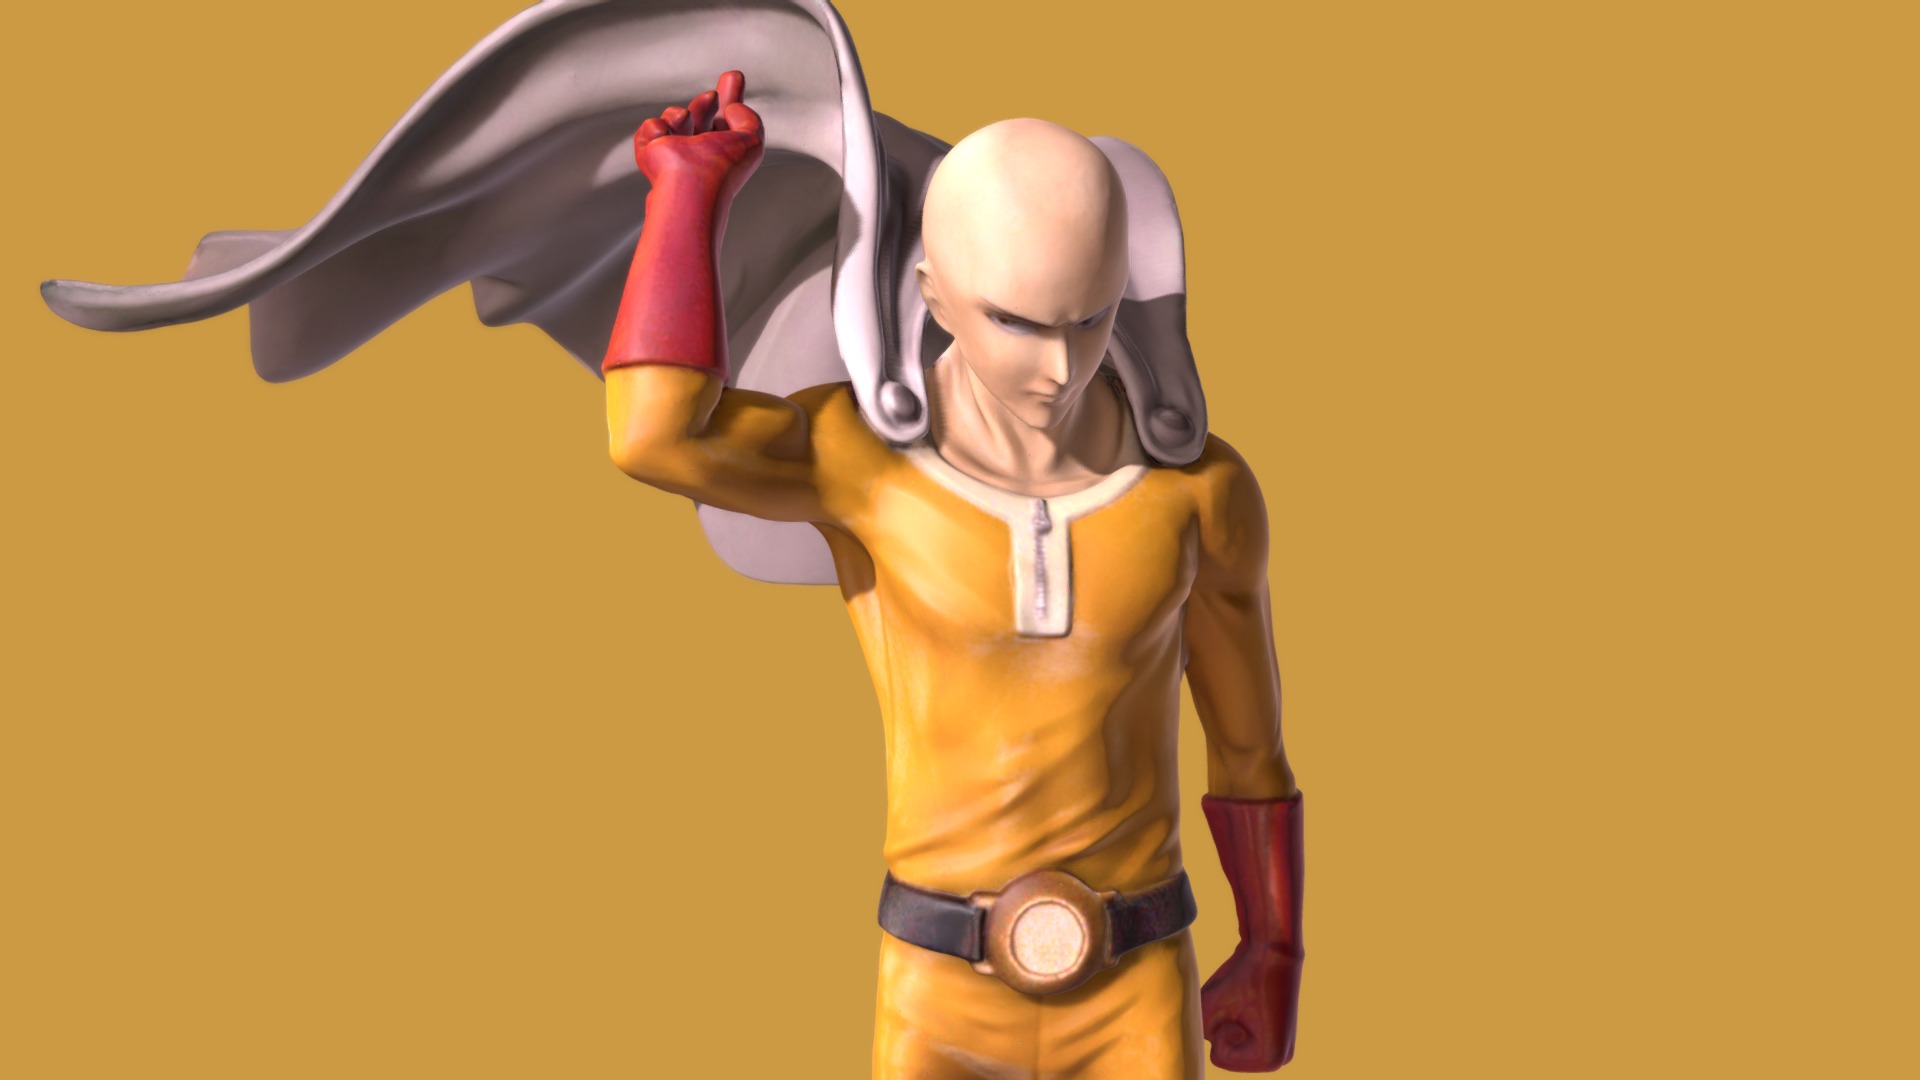 One punch man - Download Free 3D model by PWEDIEPATUTI_ (@PWEDIEPATUTI_)  [af65ad6]